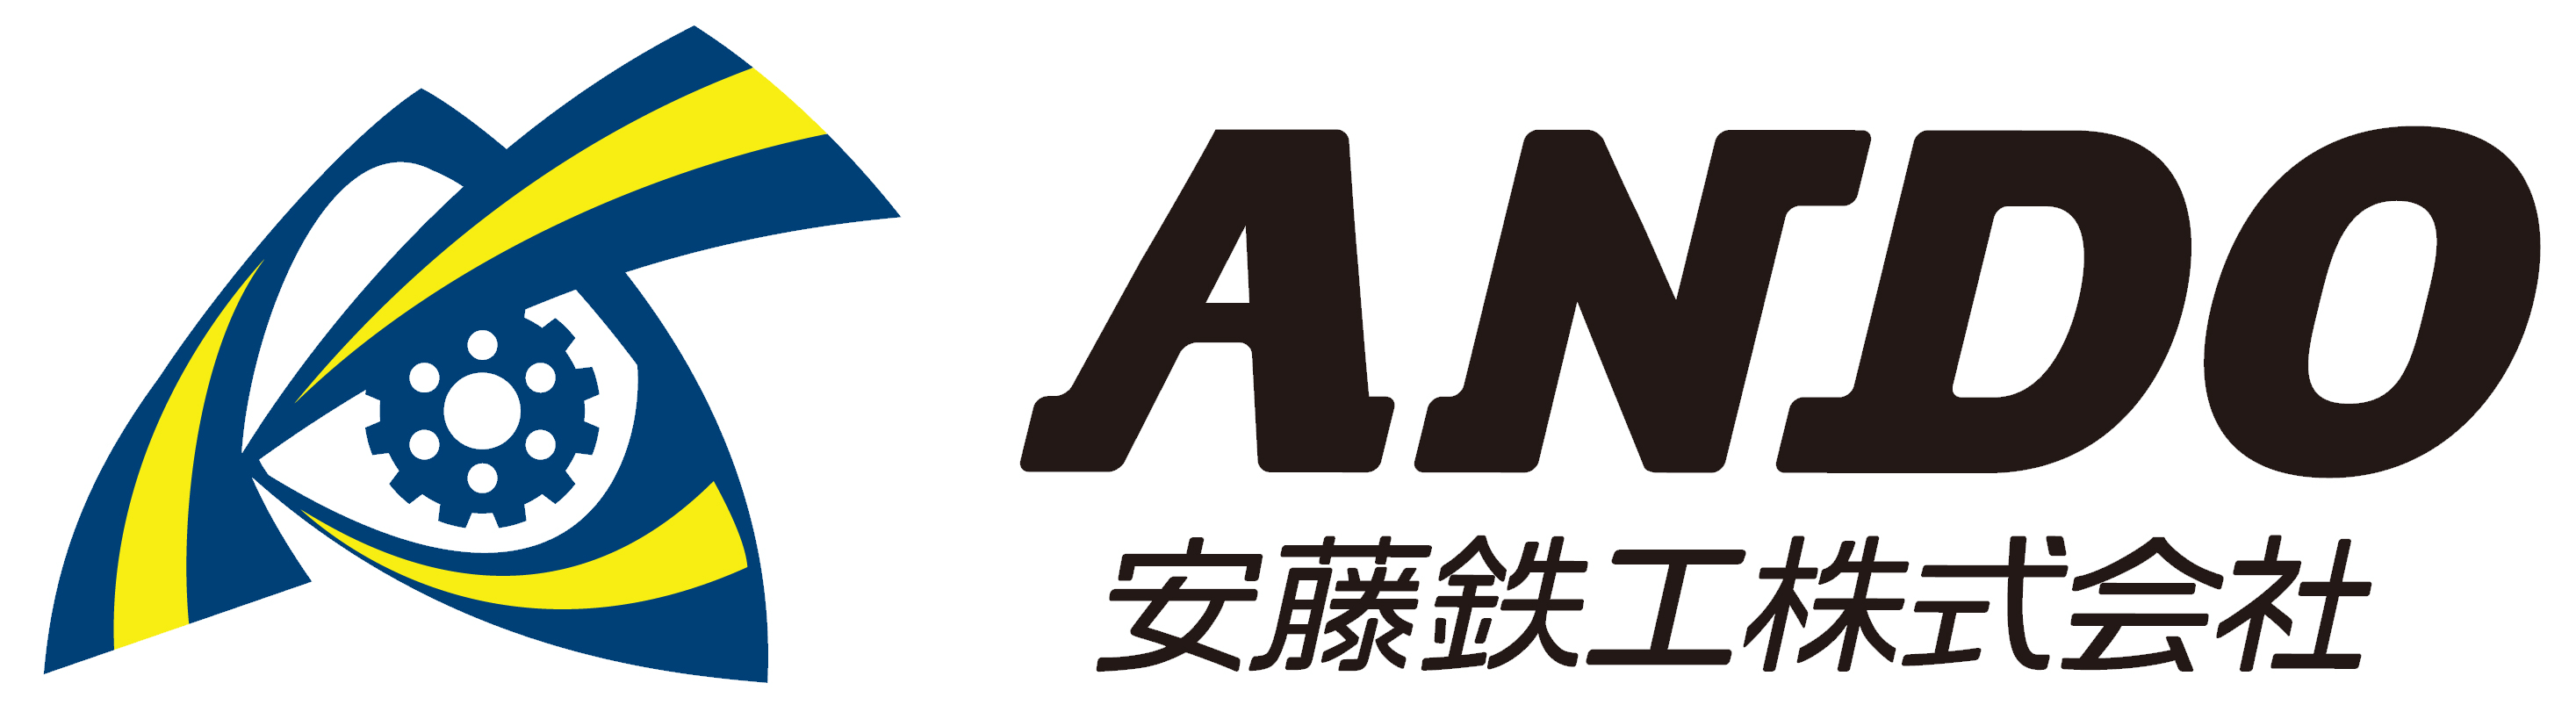 安藤鉄工株式会社